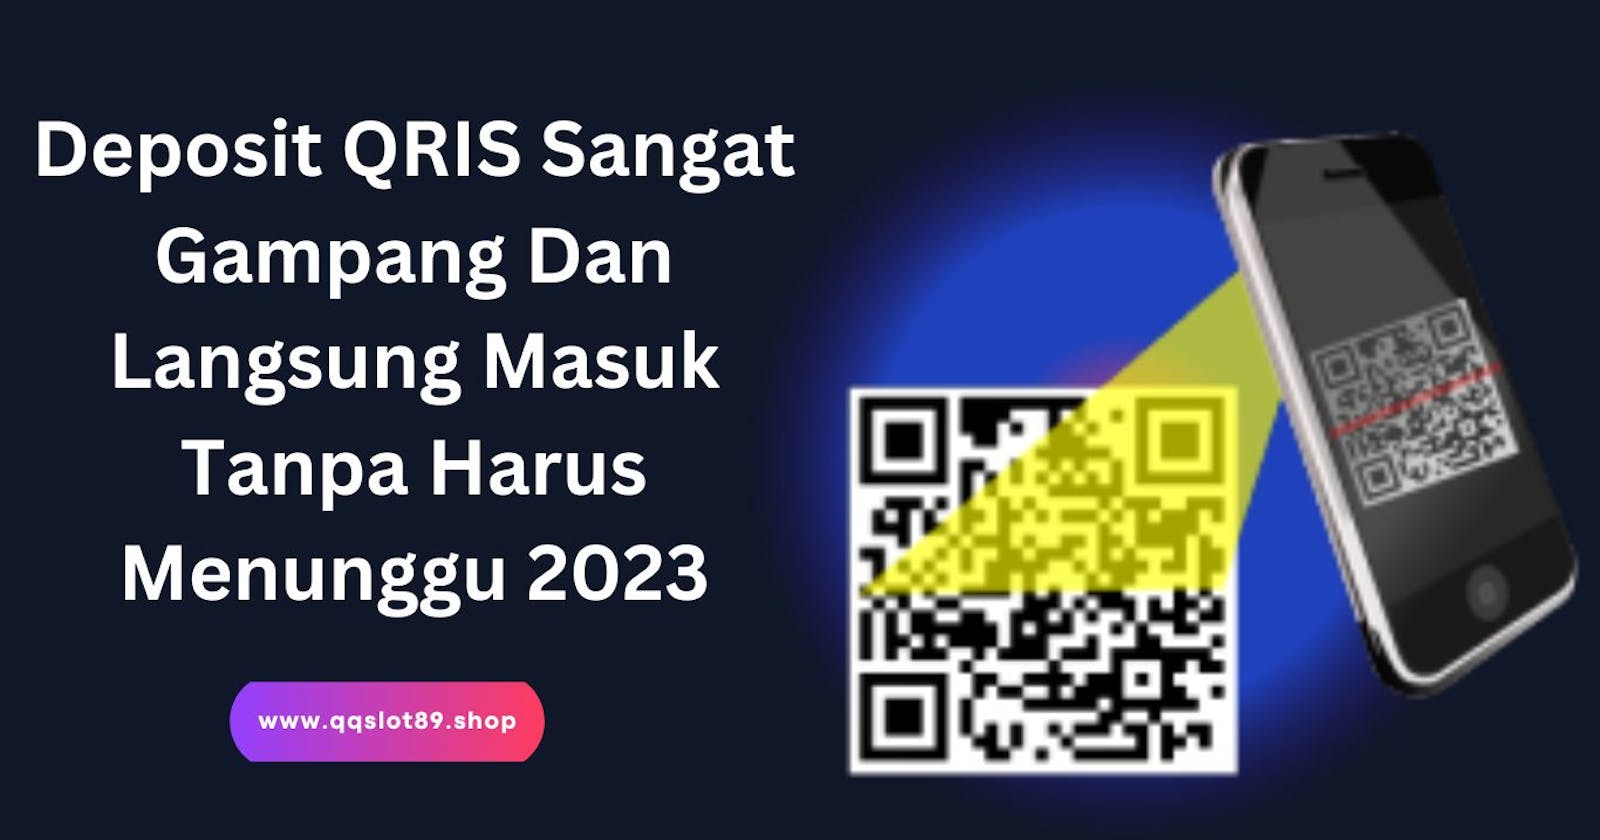 Deposit QRIS Sangat Gampang Dan Langsung Masuk Tanpa Harus Menunggu 2023